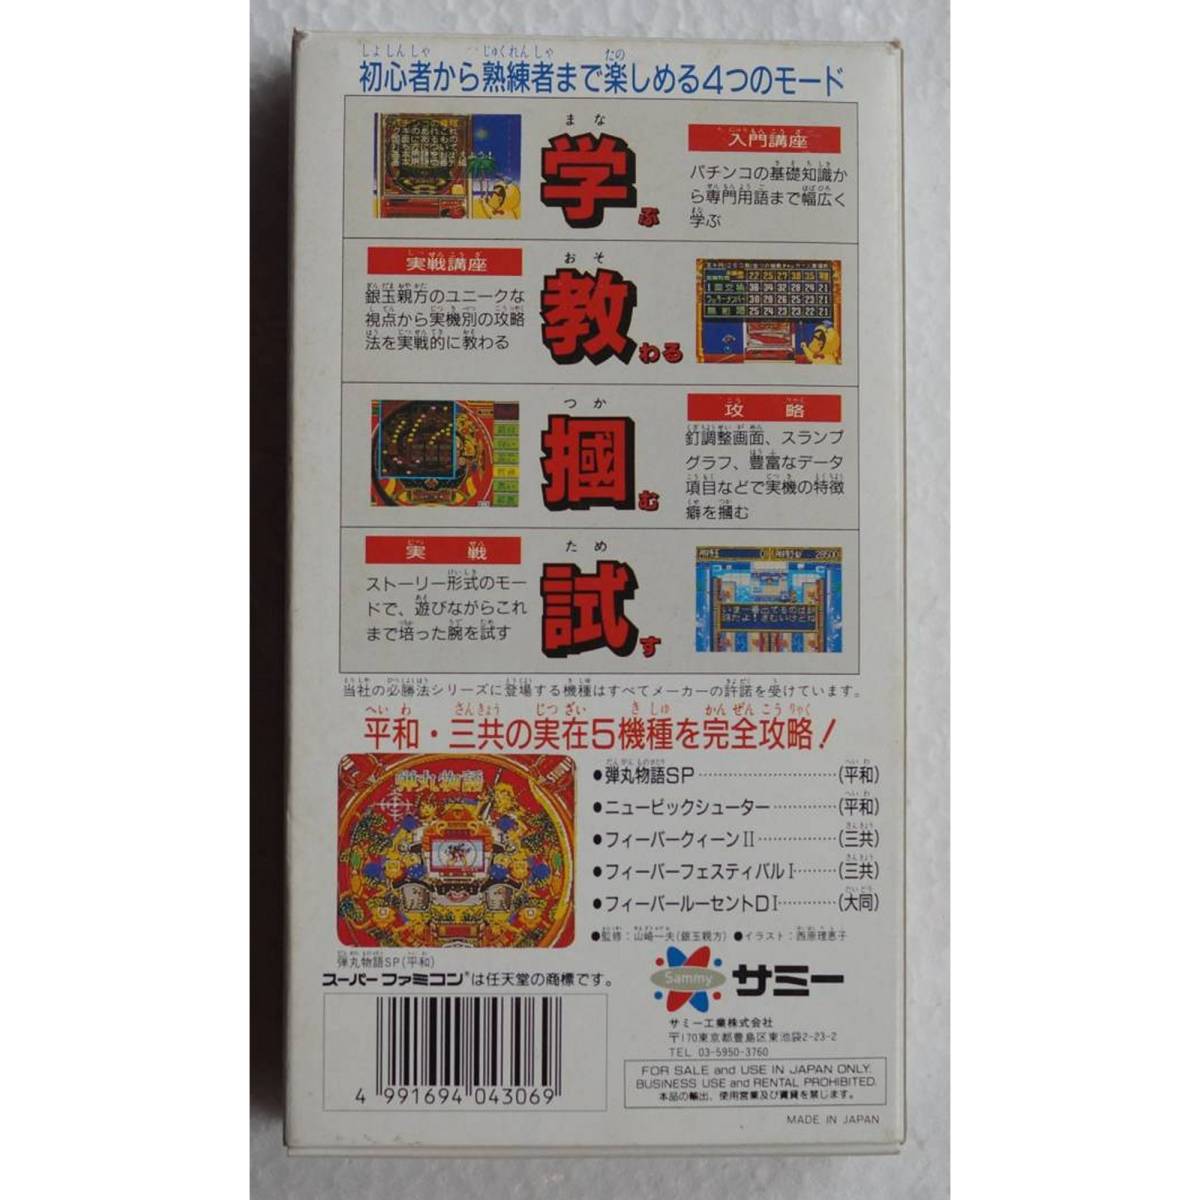  серебряный шар родители person. реальный битва патинко обязательно . закон SHVC-AJPJ Super Famicom игра 